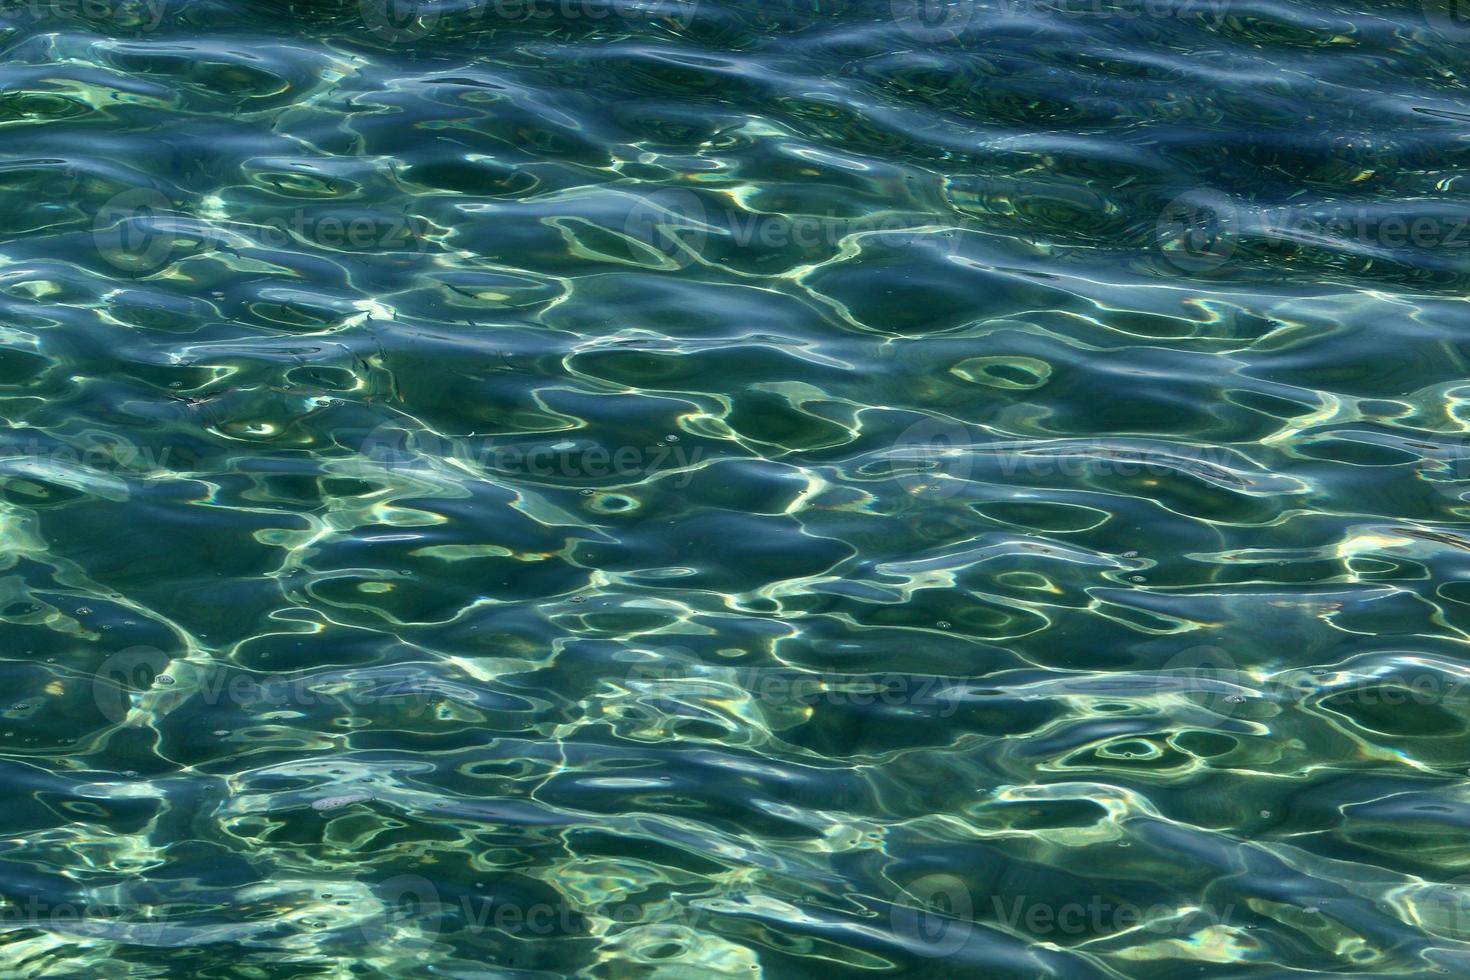 färgen på havsvatten i grunt vatten. foto